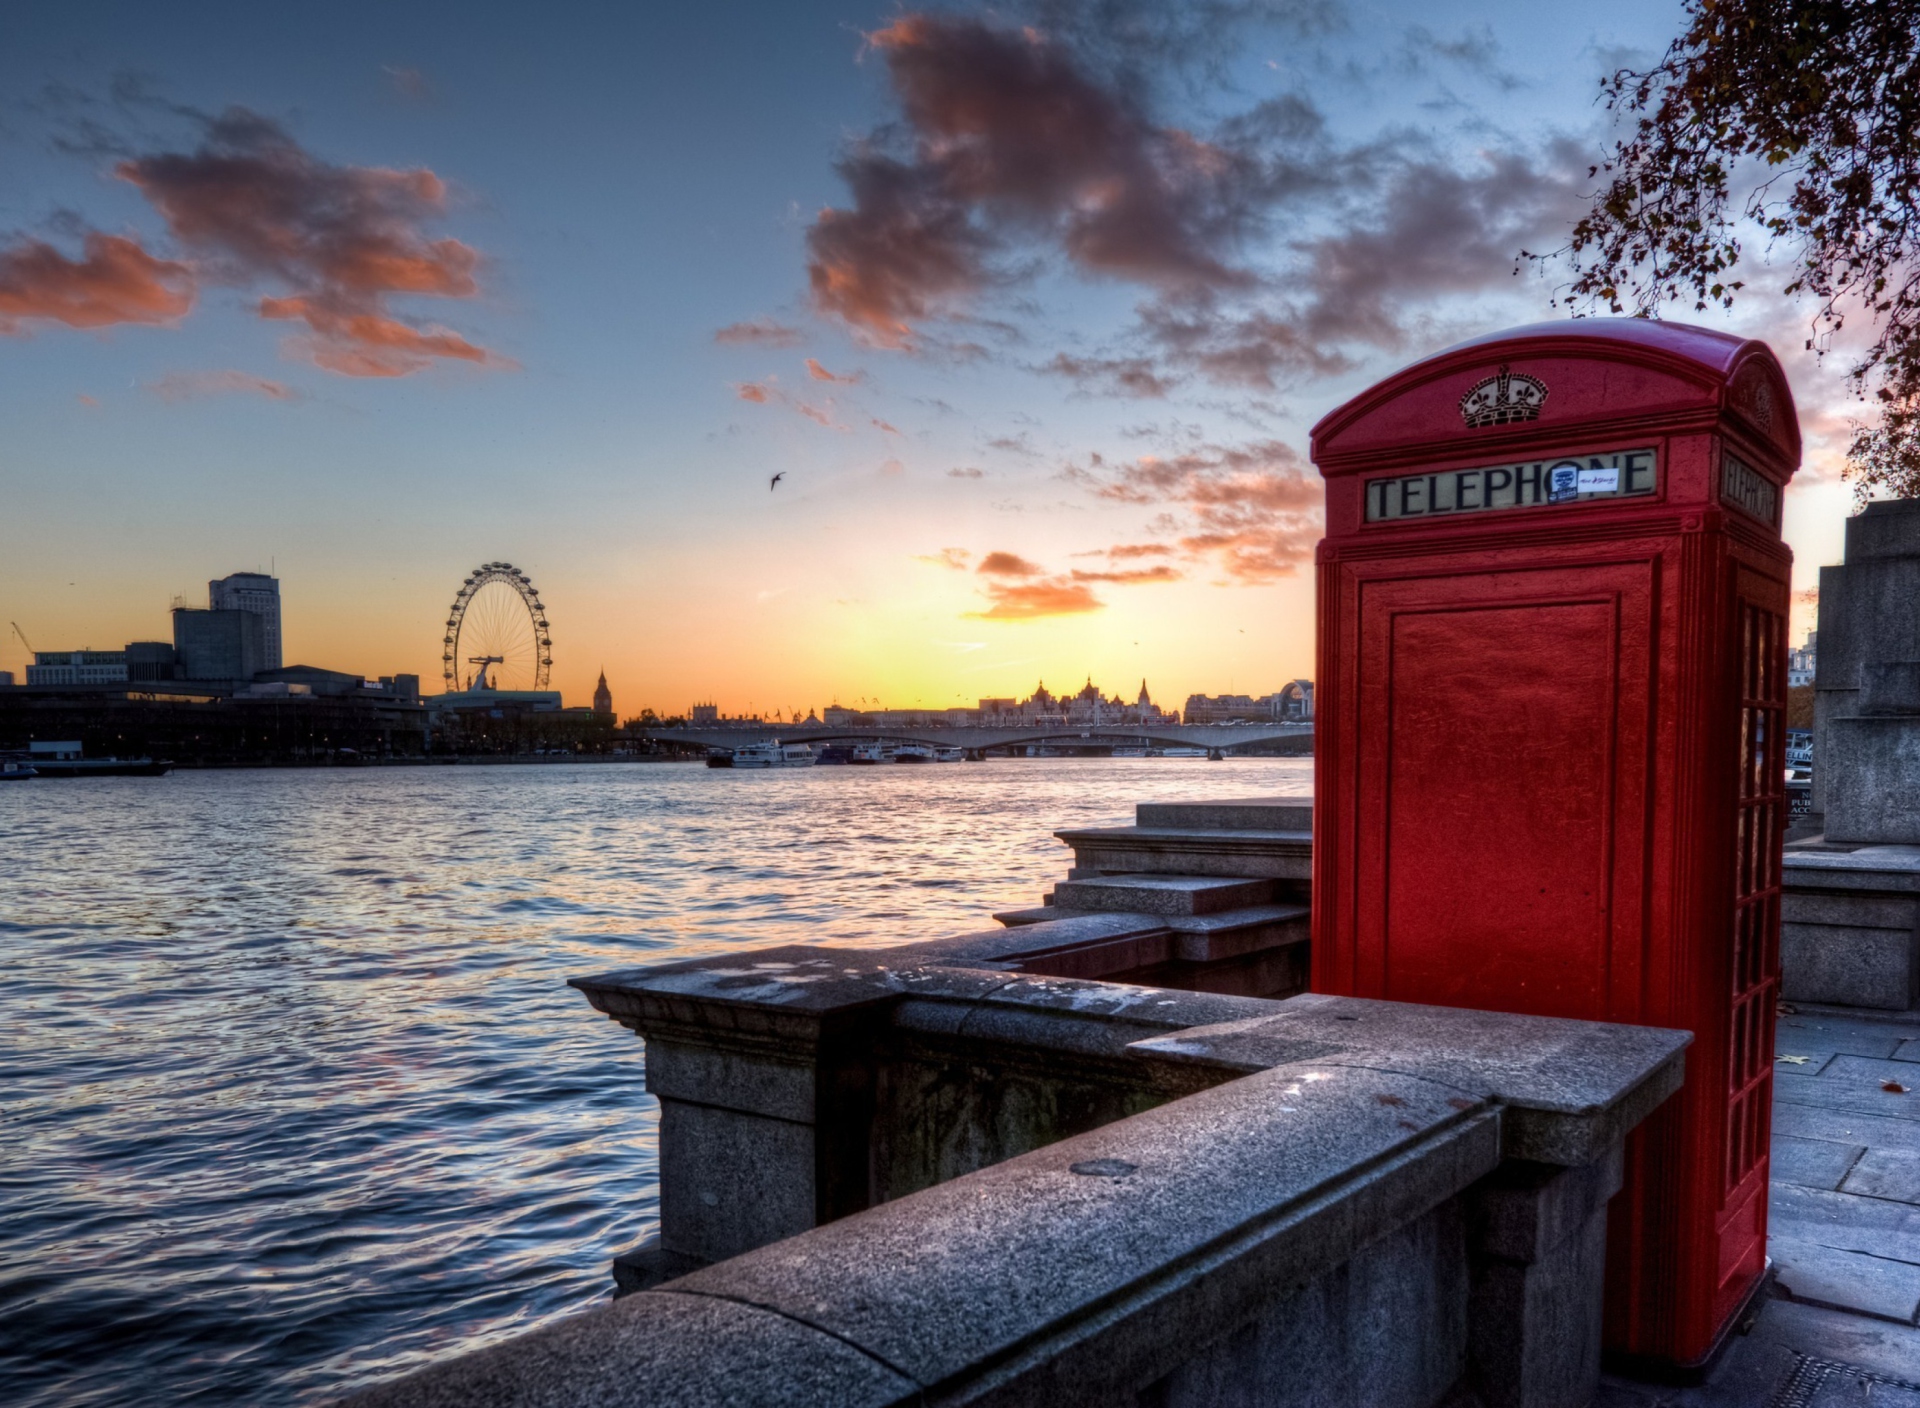 Обои England Phone Booth in London 1920x1408